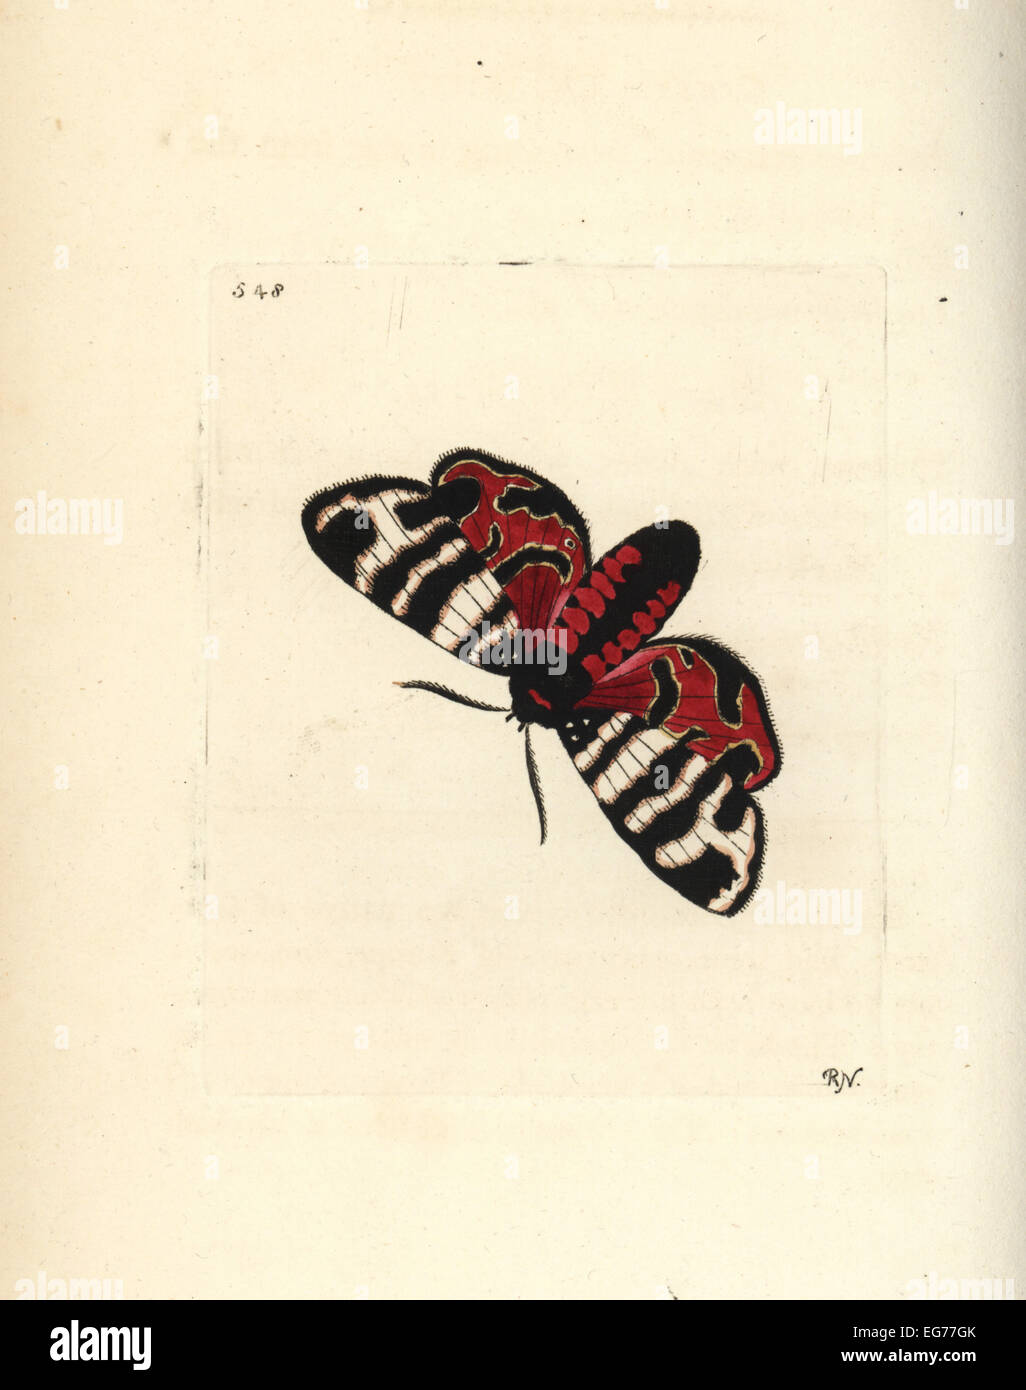 Hebe tiger moth, Eucharia festiva (Hebe moth, Phalaena hebe). Stock Photo